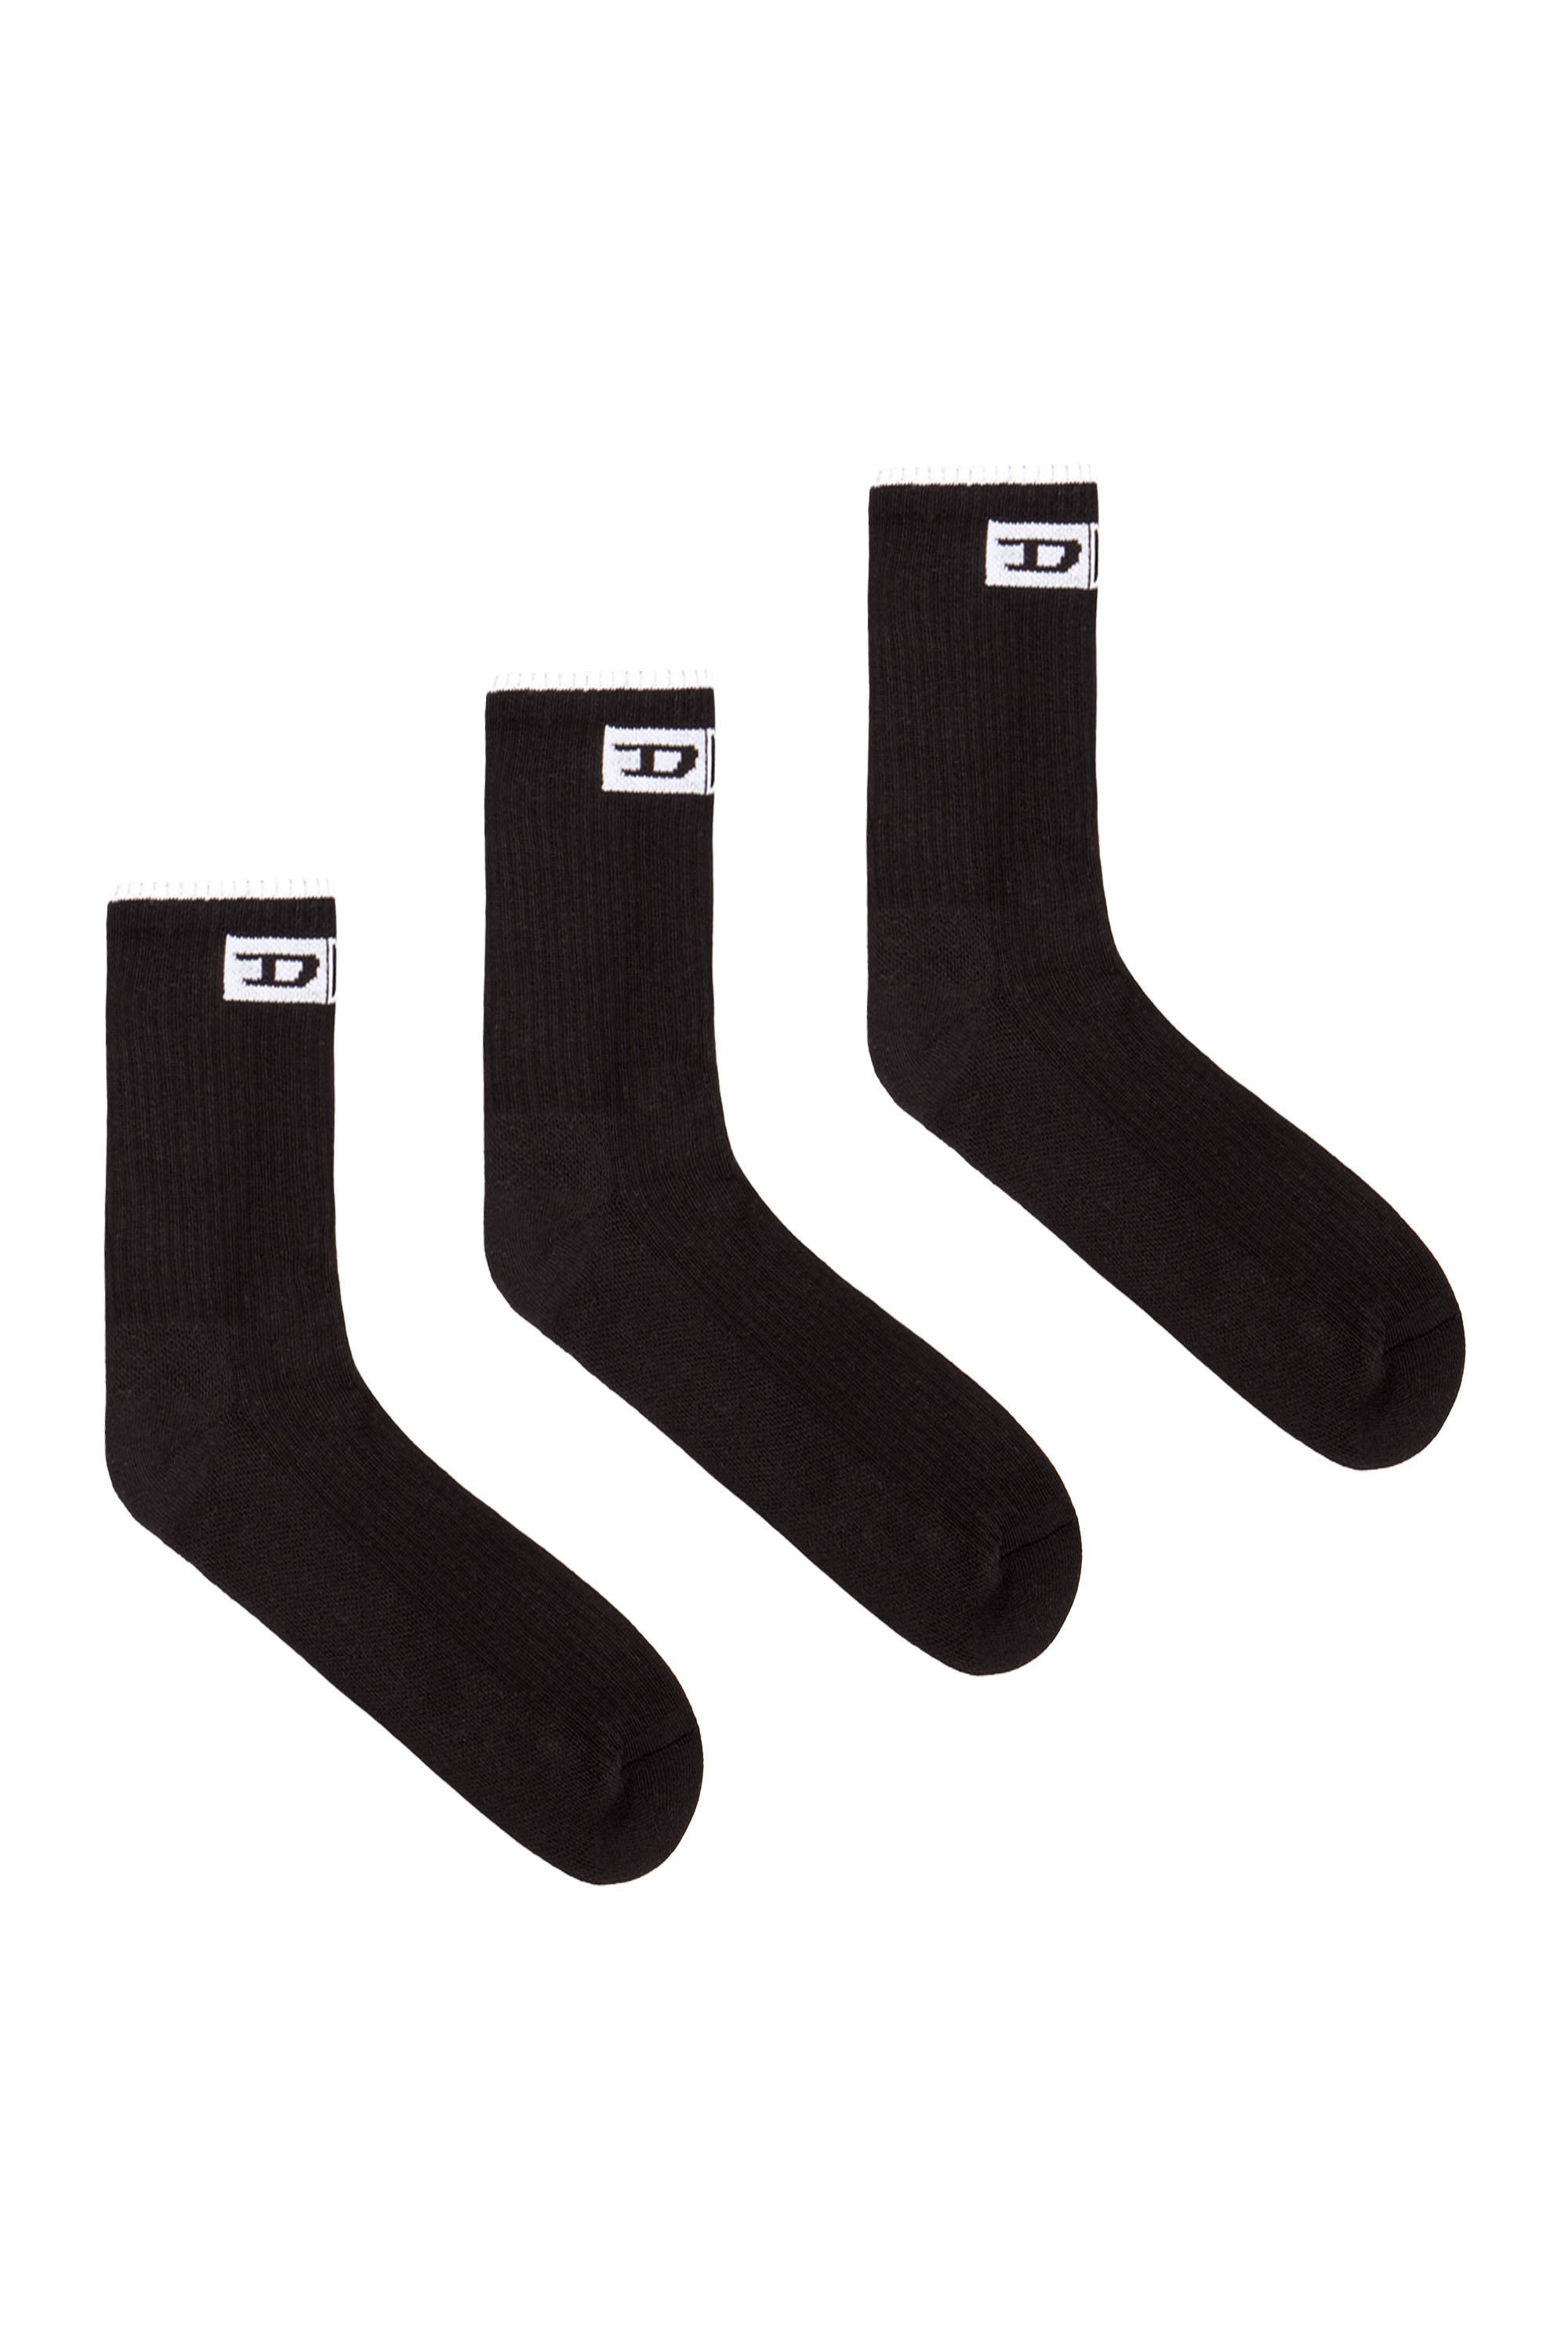 SKM-D-DIVISION-MID-CUT-CUSHIONED-SOCKS, Black - Socks